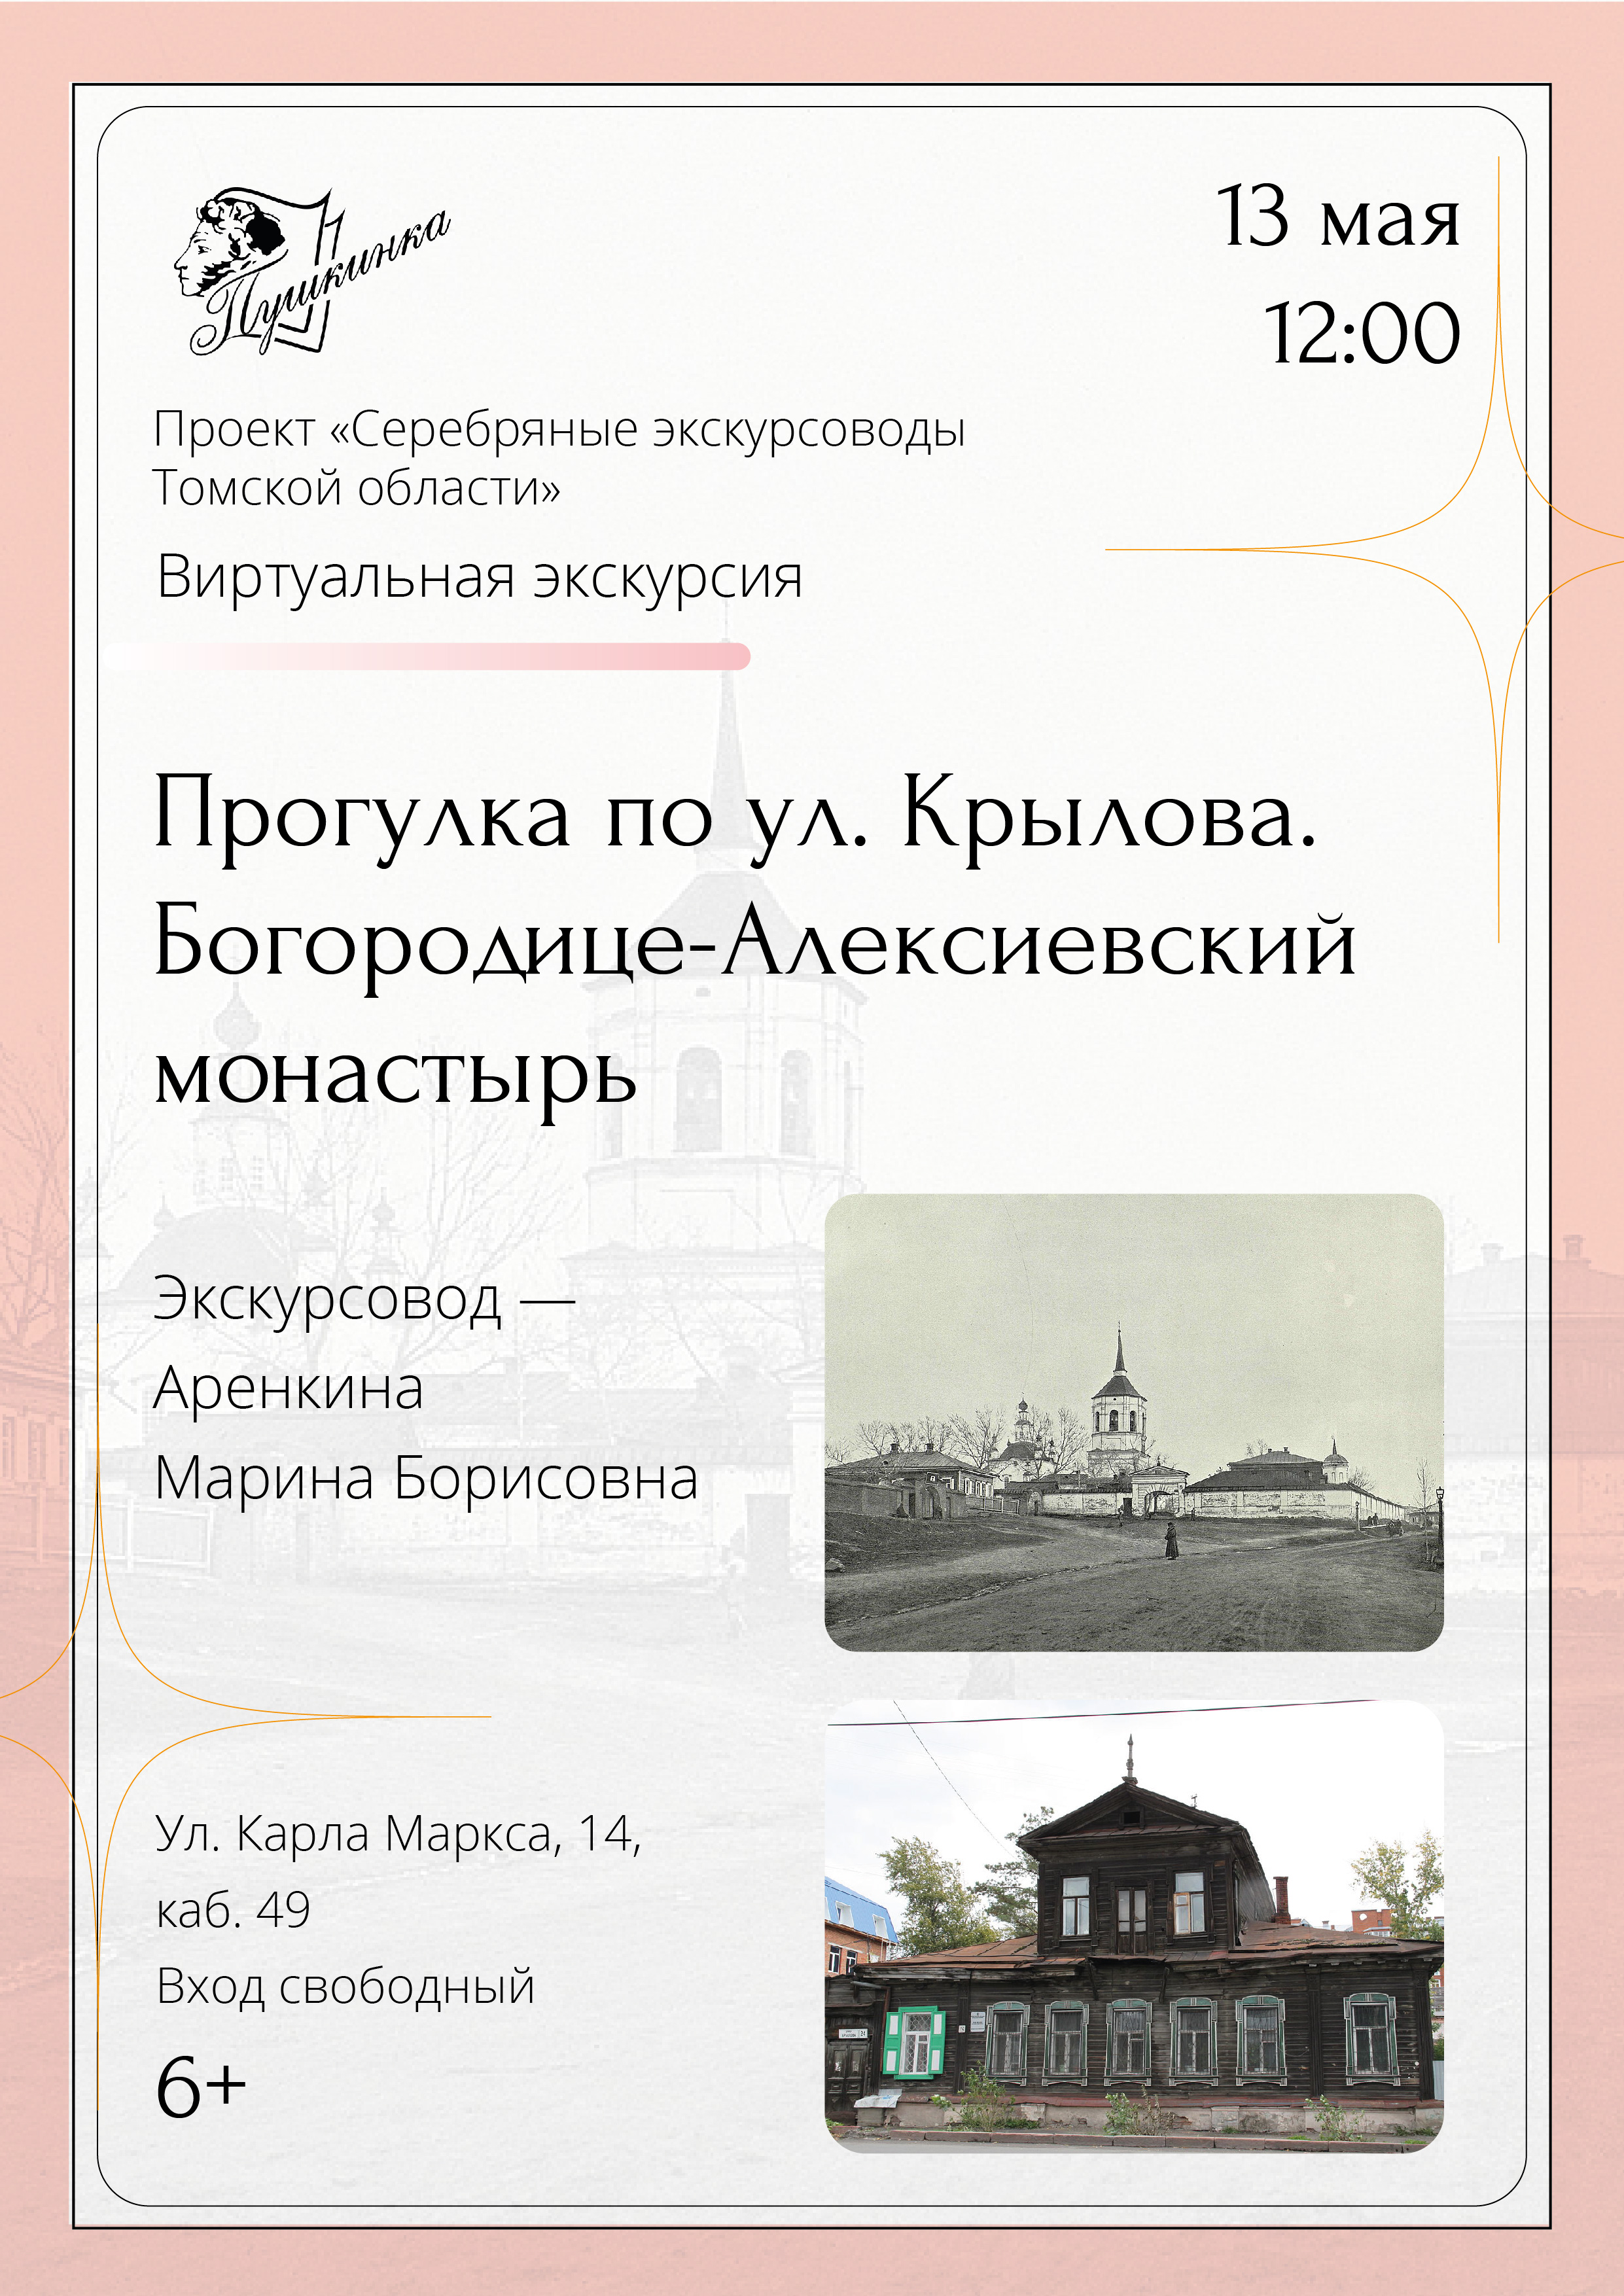 Виртуальная экскурсия «Прогулка по ул. Крылова. Богородице-Алексиевский монастырь» (6+)